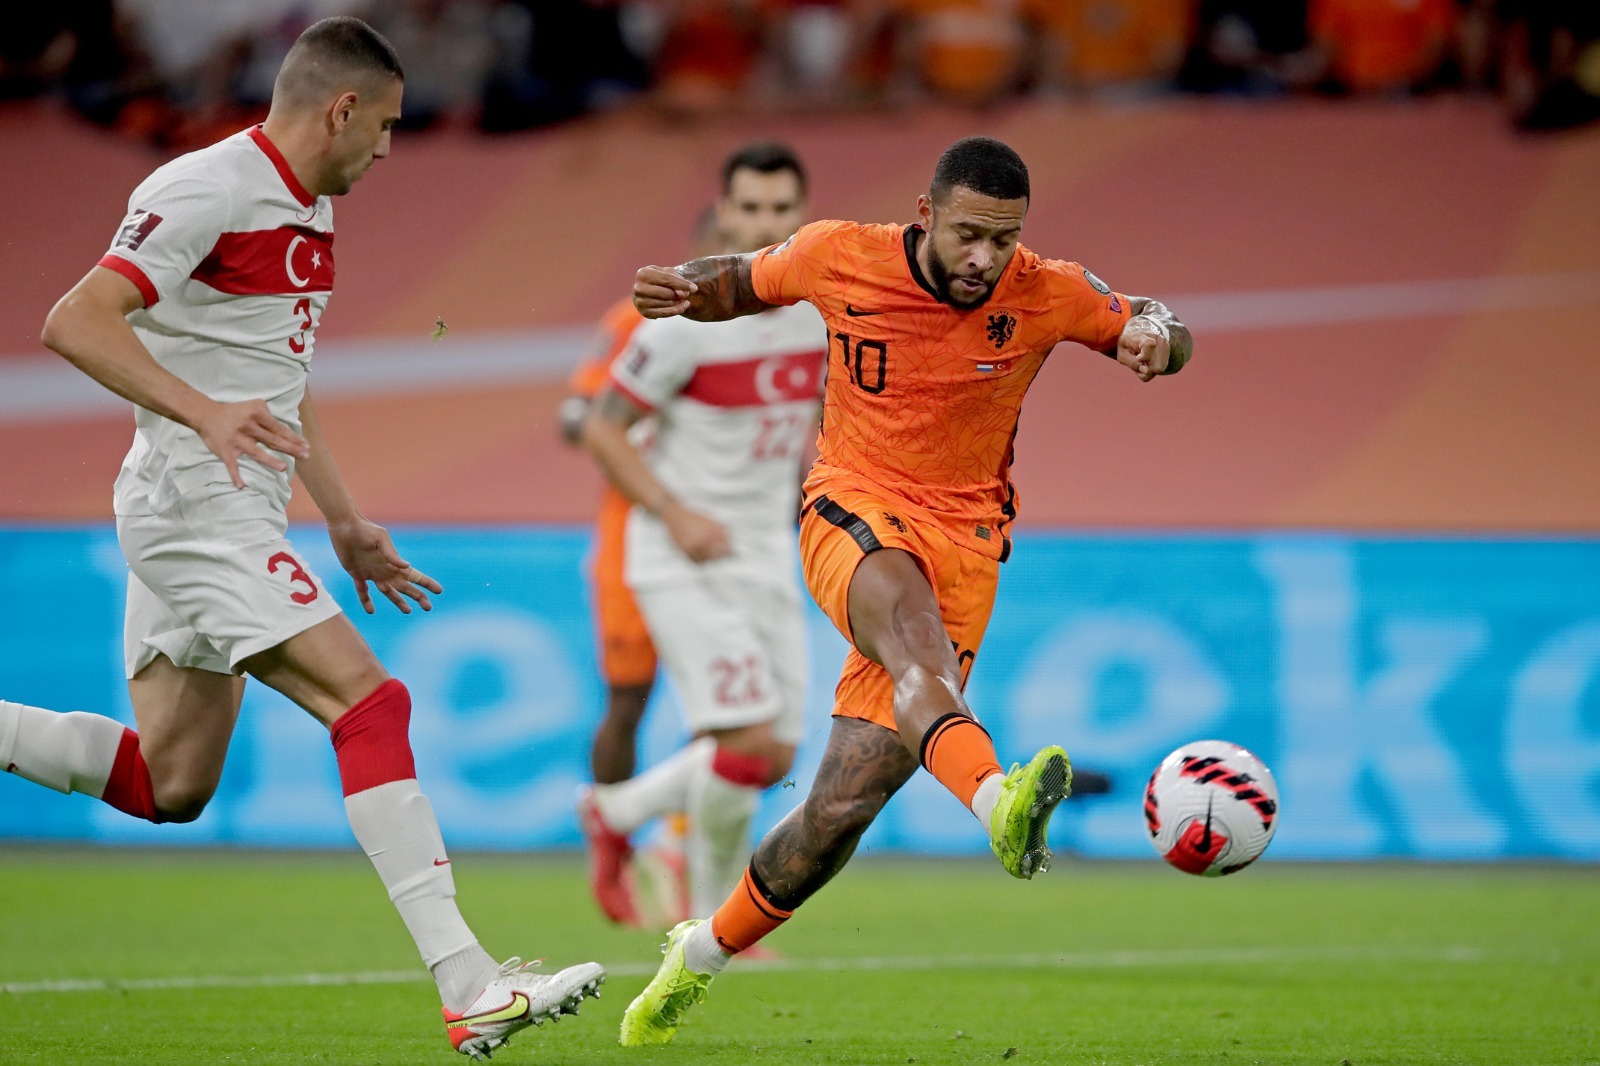 ĐT Hà Lan liên tục ghi những bàn thắng ở hiệp đầu tiên